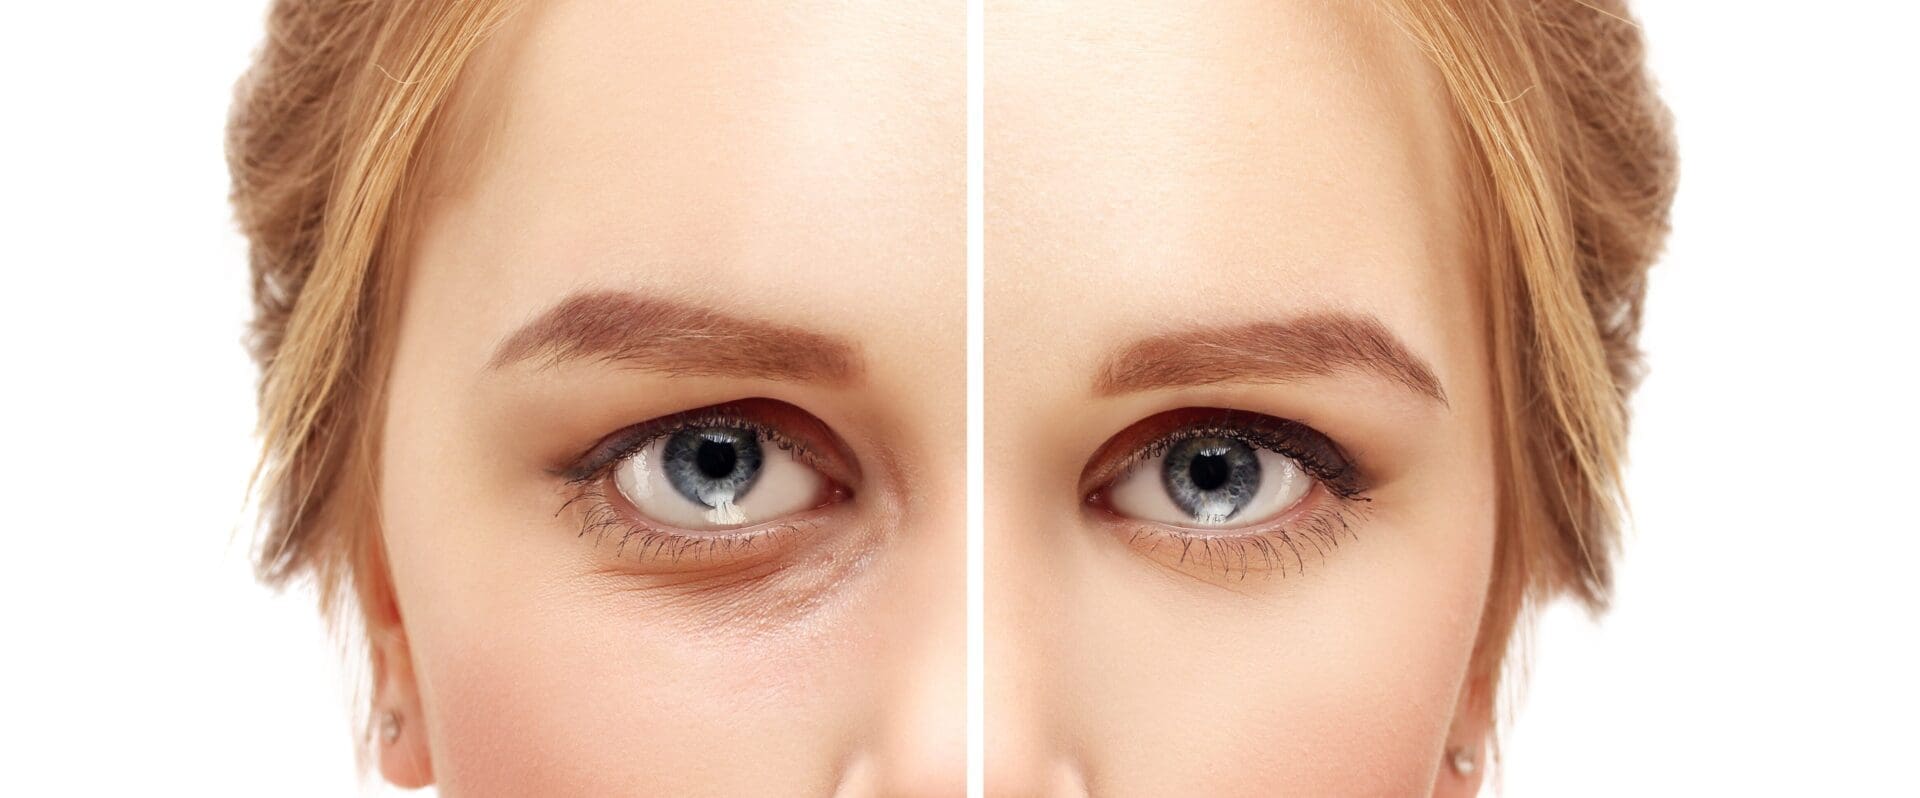 Lower-eyelid blepharoplasty. Asian eyelid surgery. Upper blepharoplasty. Correcting  the aging process